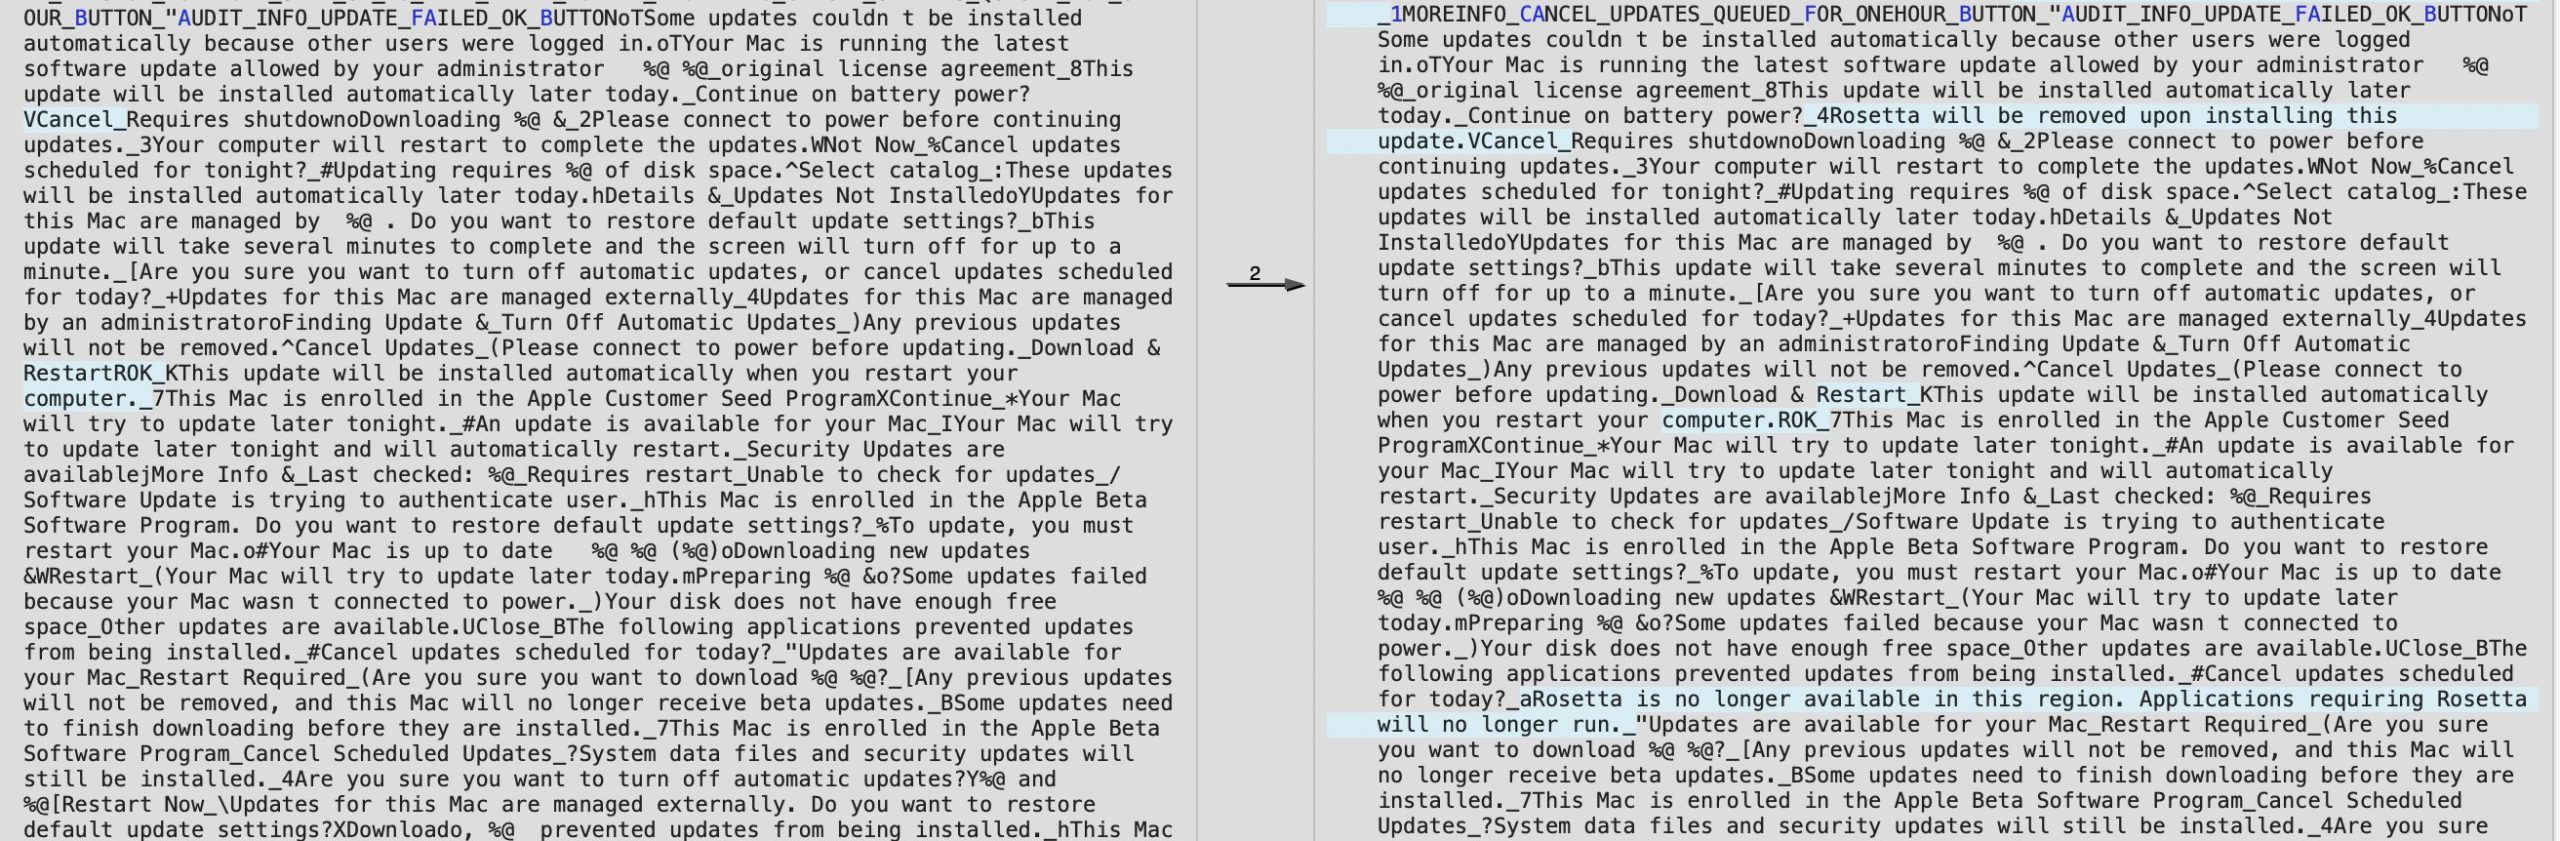 Menciones a Rosetta en macOS 11.3